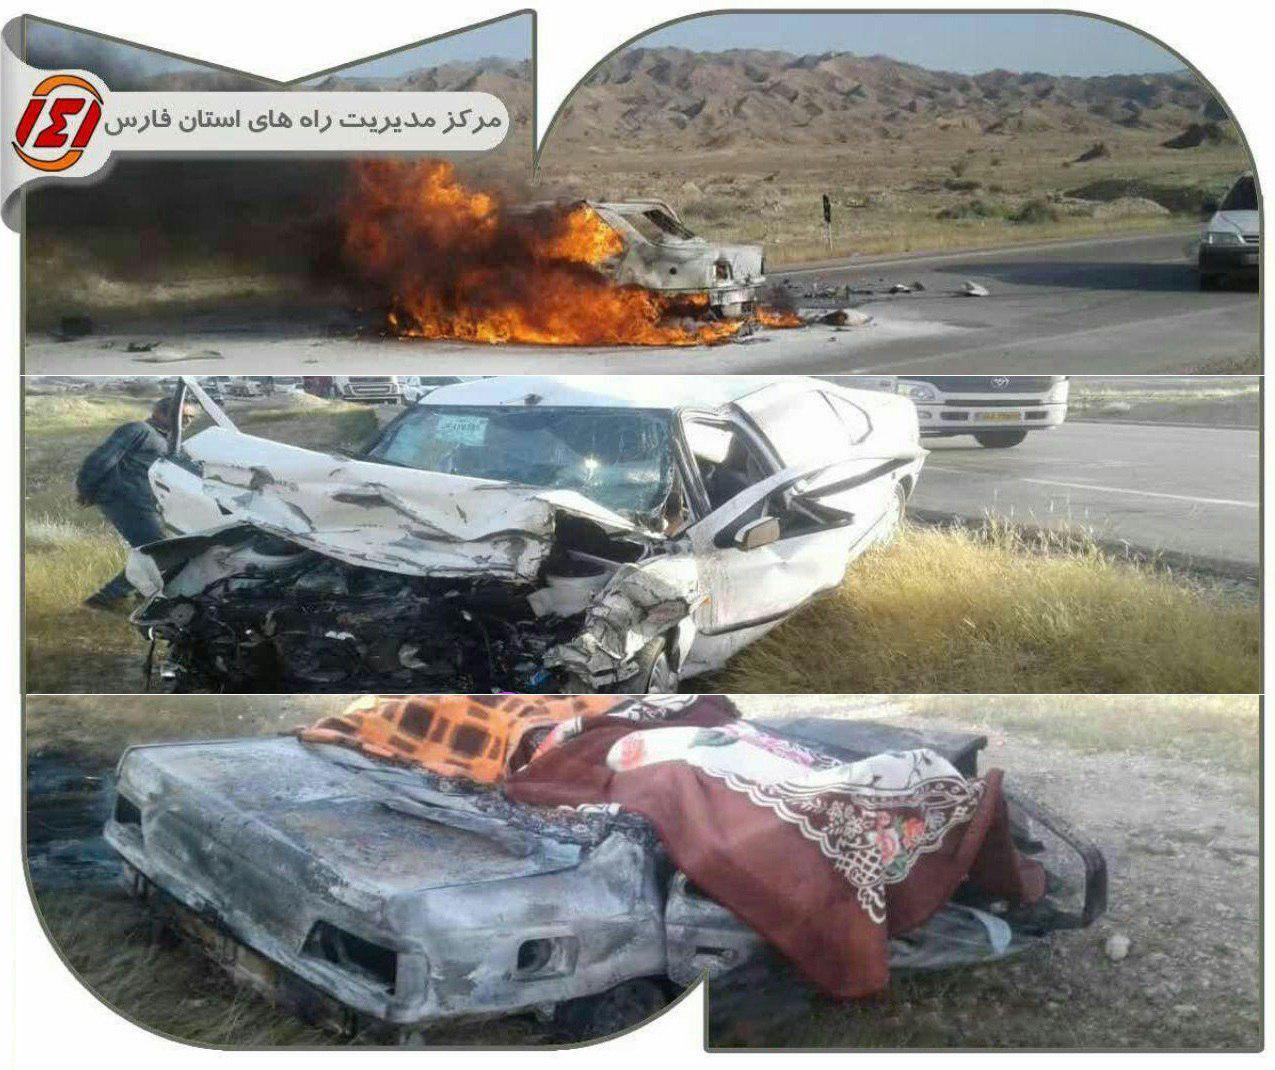 7 کشته در پی تصادف مرگبار در استان فارس+عکس